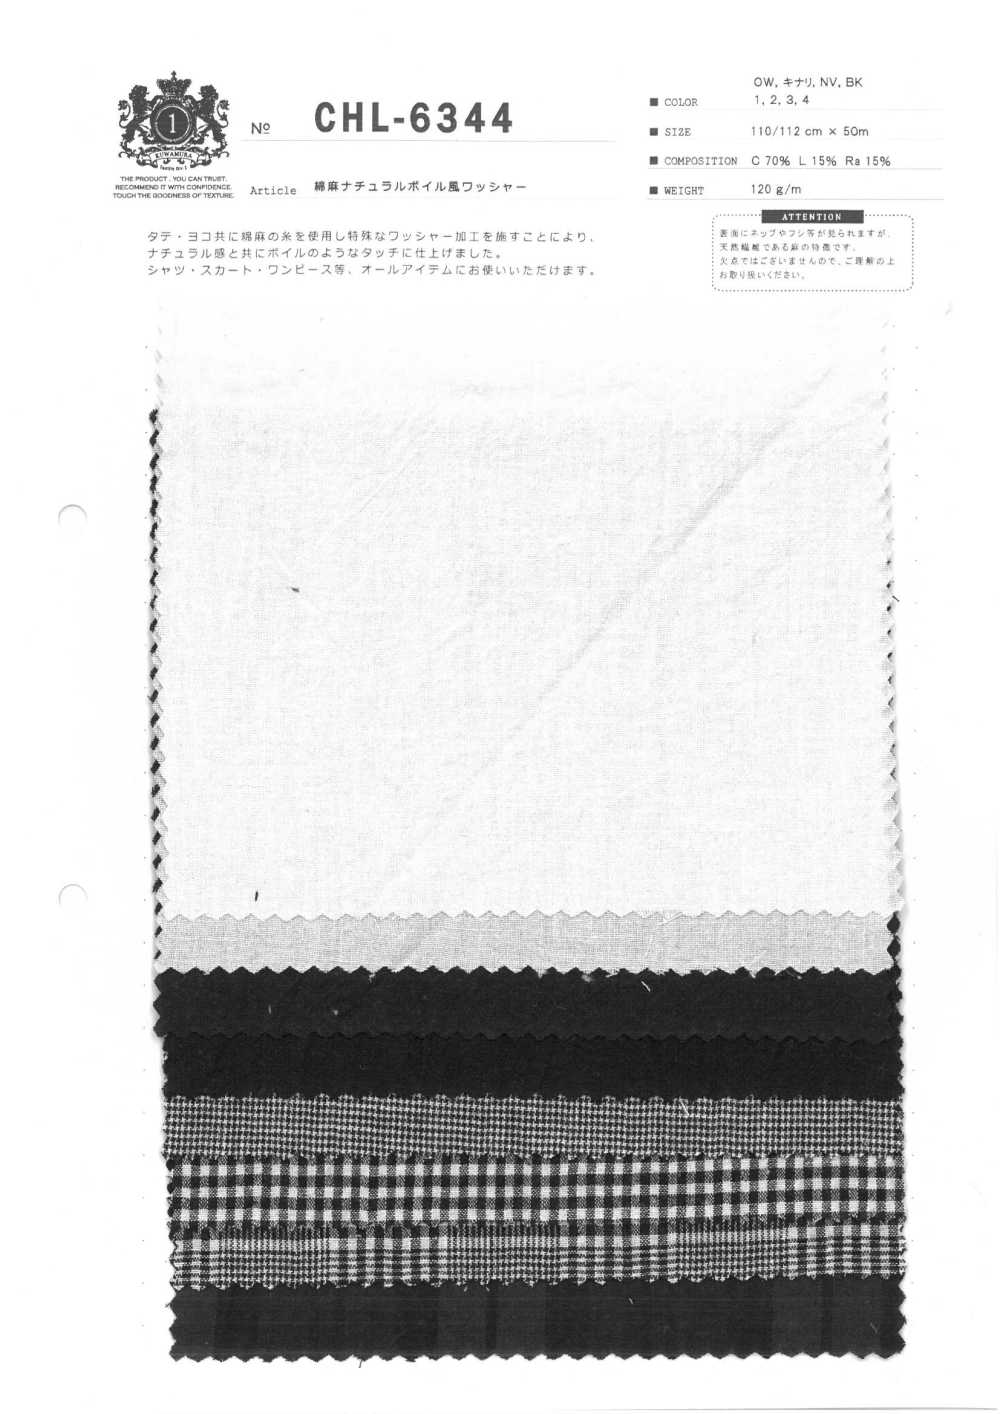 CHL-6344 Verarbeitung Von Leinen Im Natürlichen Voile-Stil[Textilgewebe] Kuwamura-Faser